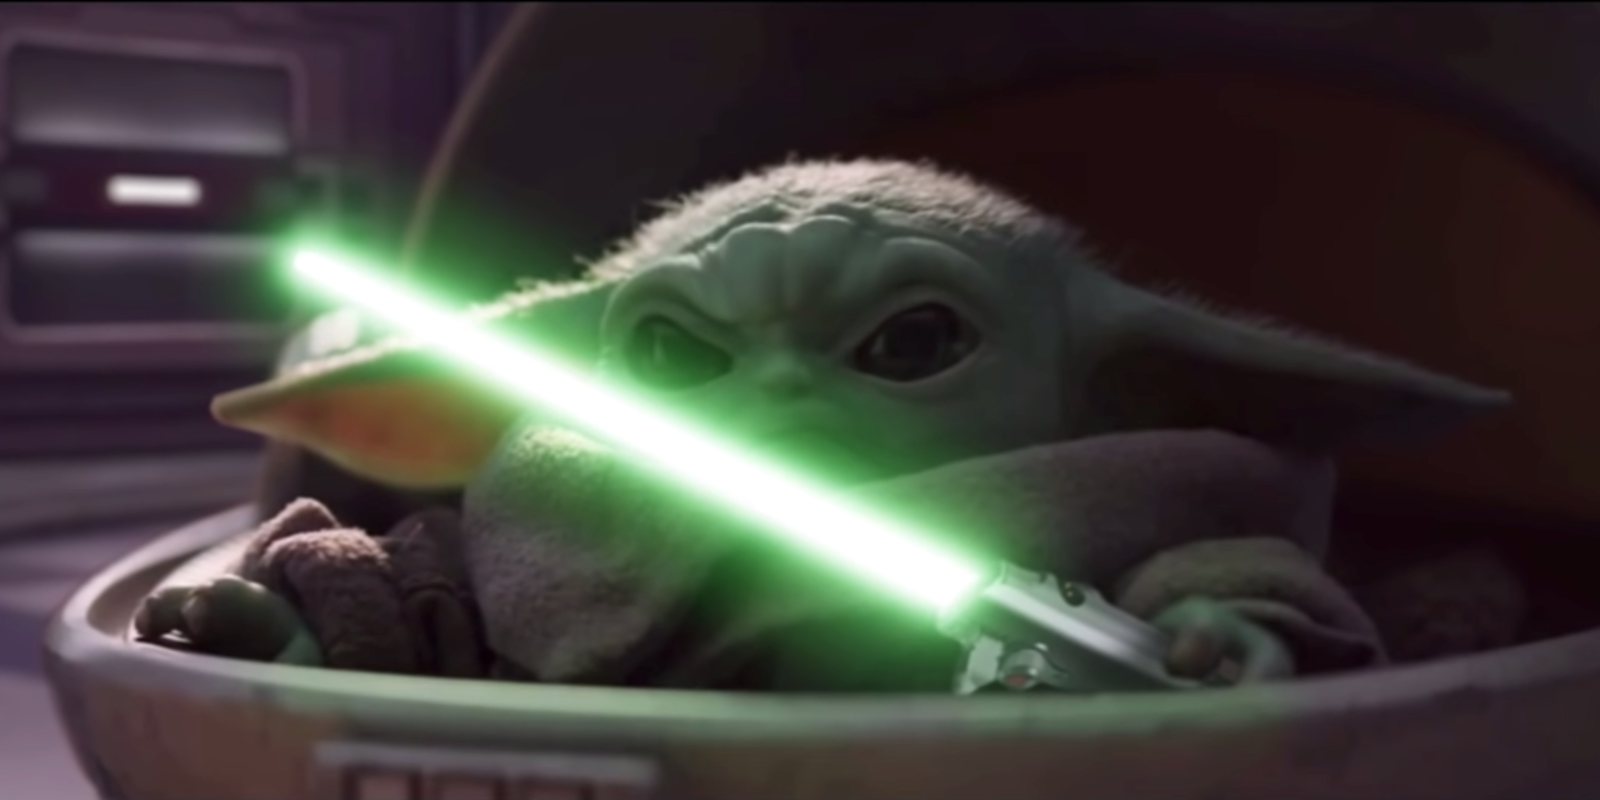 The Mandalorian: Could Baby Yoda Actually Be [SPOILER]?